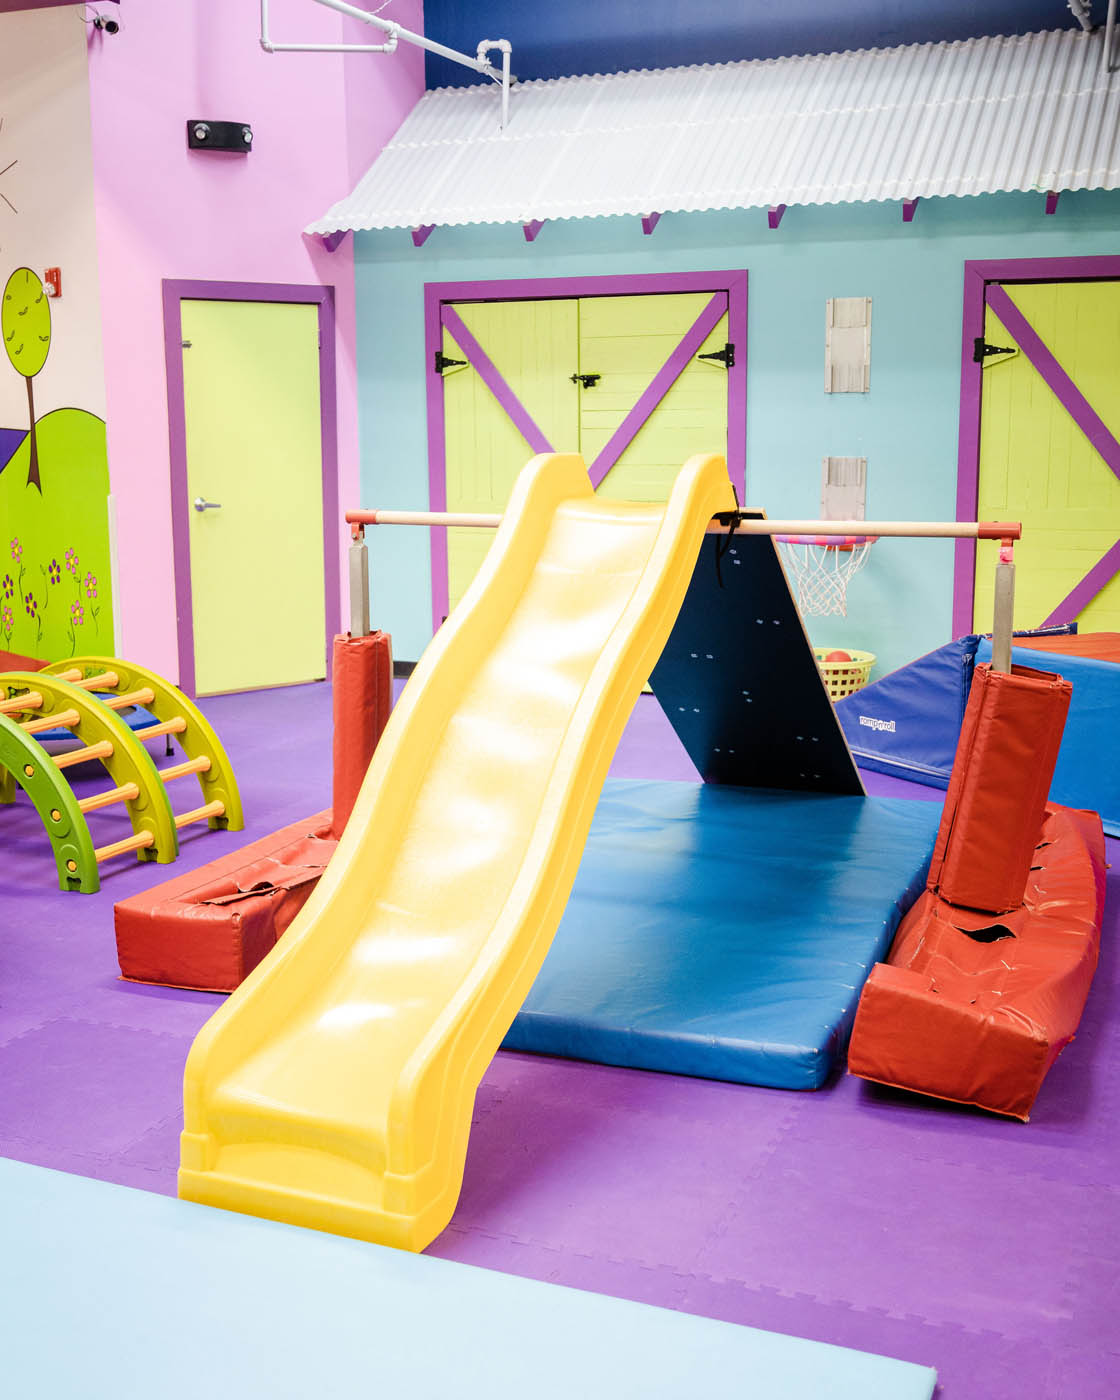 A Romp n' Roll West End slide, indoor playgrounds in Glen Allen, VA.